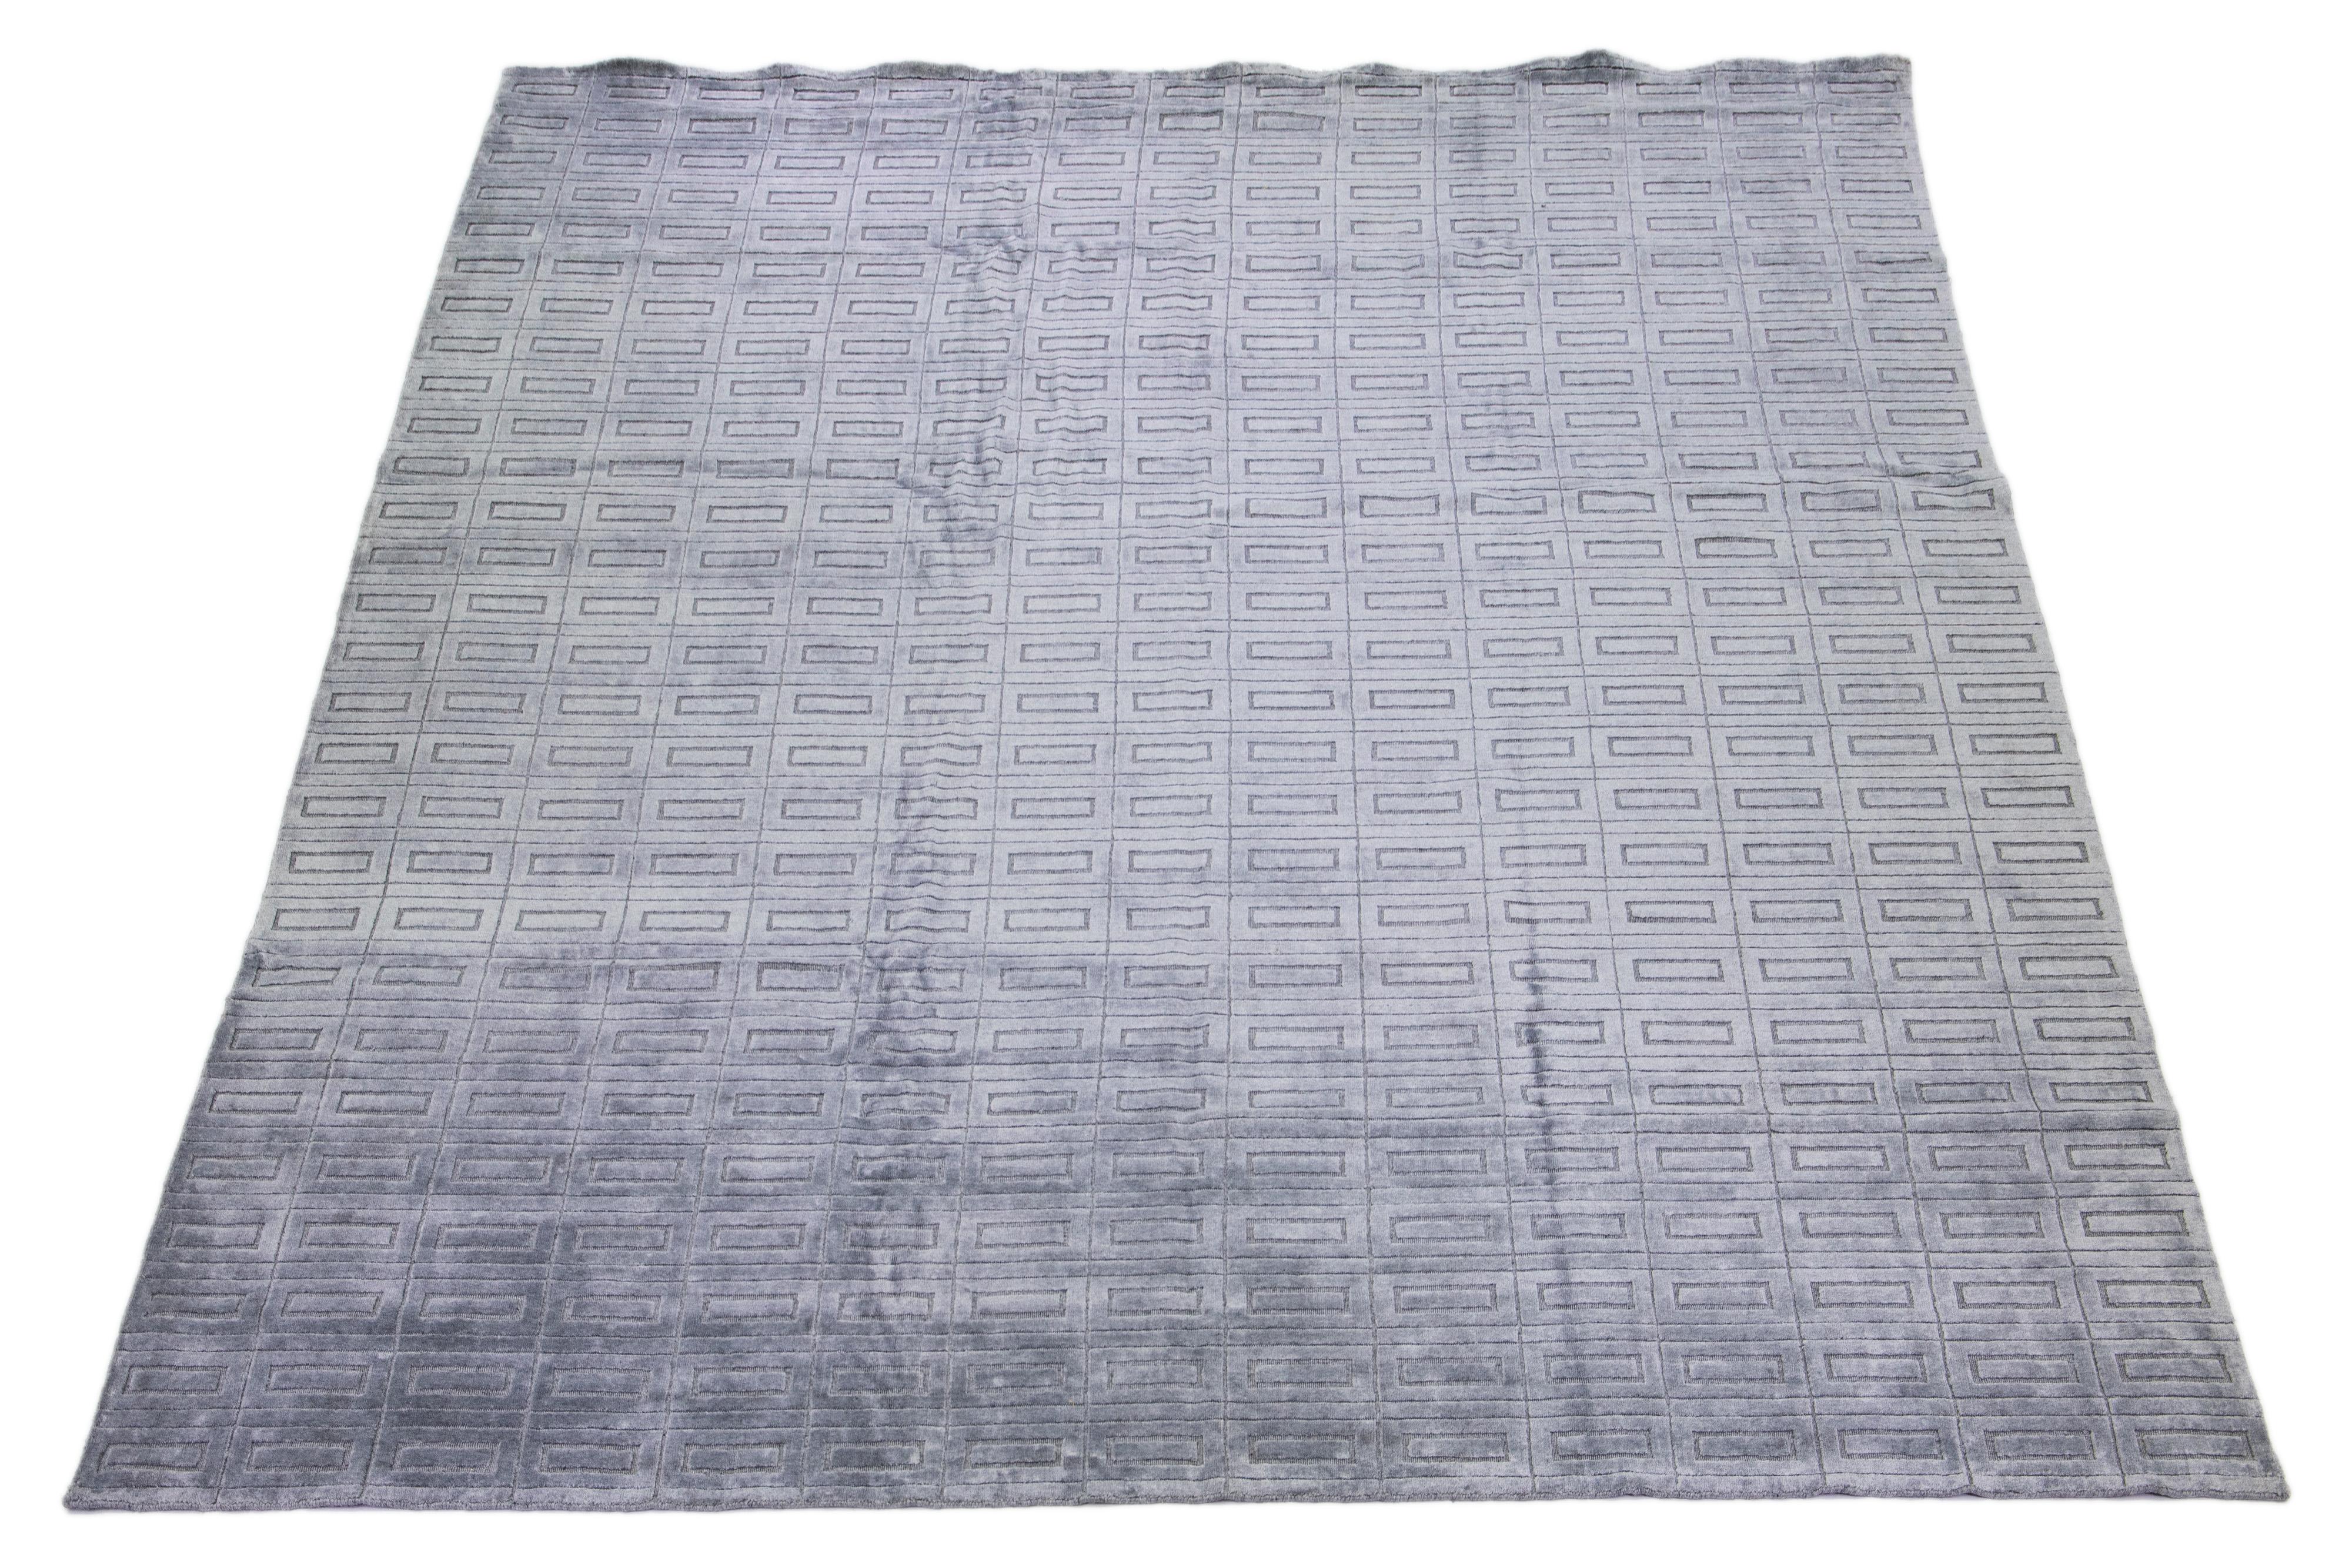 Schöner moderner Ikat-Teppich aus handgeknüpfter Wolle mit einem grau-silbernen Farbfeld. Dieses Stück hat ein wunderschönes geometrisches All-Over-Muster.

Dieser Teppich misst: 12'1